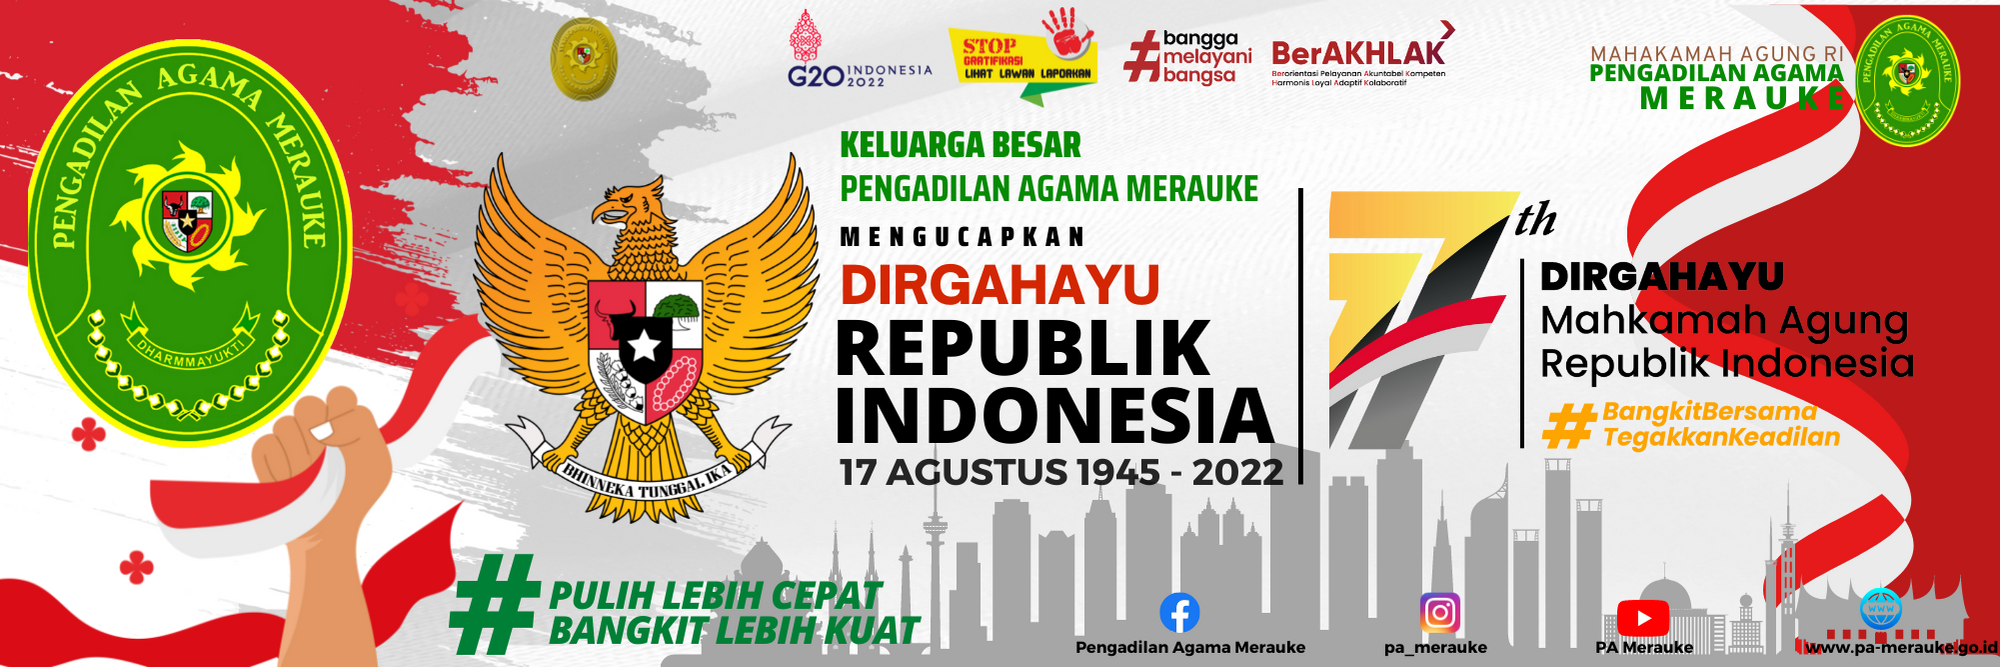 Pengadiln Agama Merauke Mengucapkan Selamat Dirgahayu Republik Indonesia dan Hari Ulang Tahun Mahkamah Agung RI